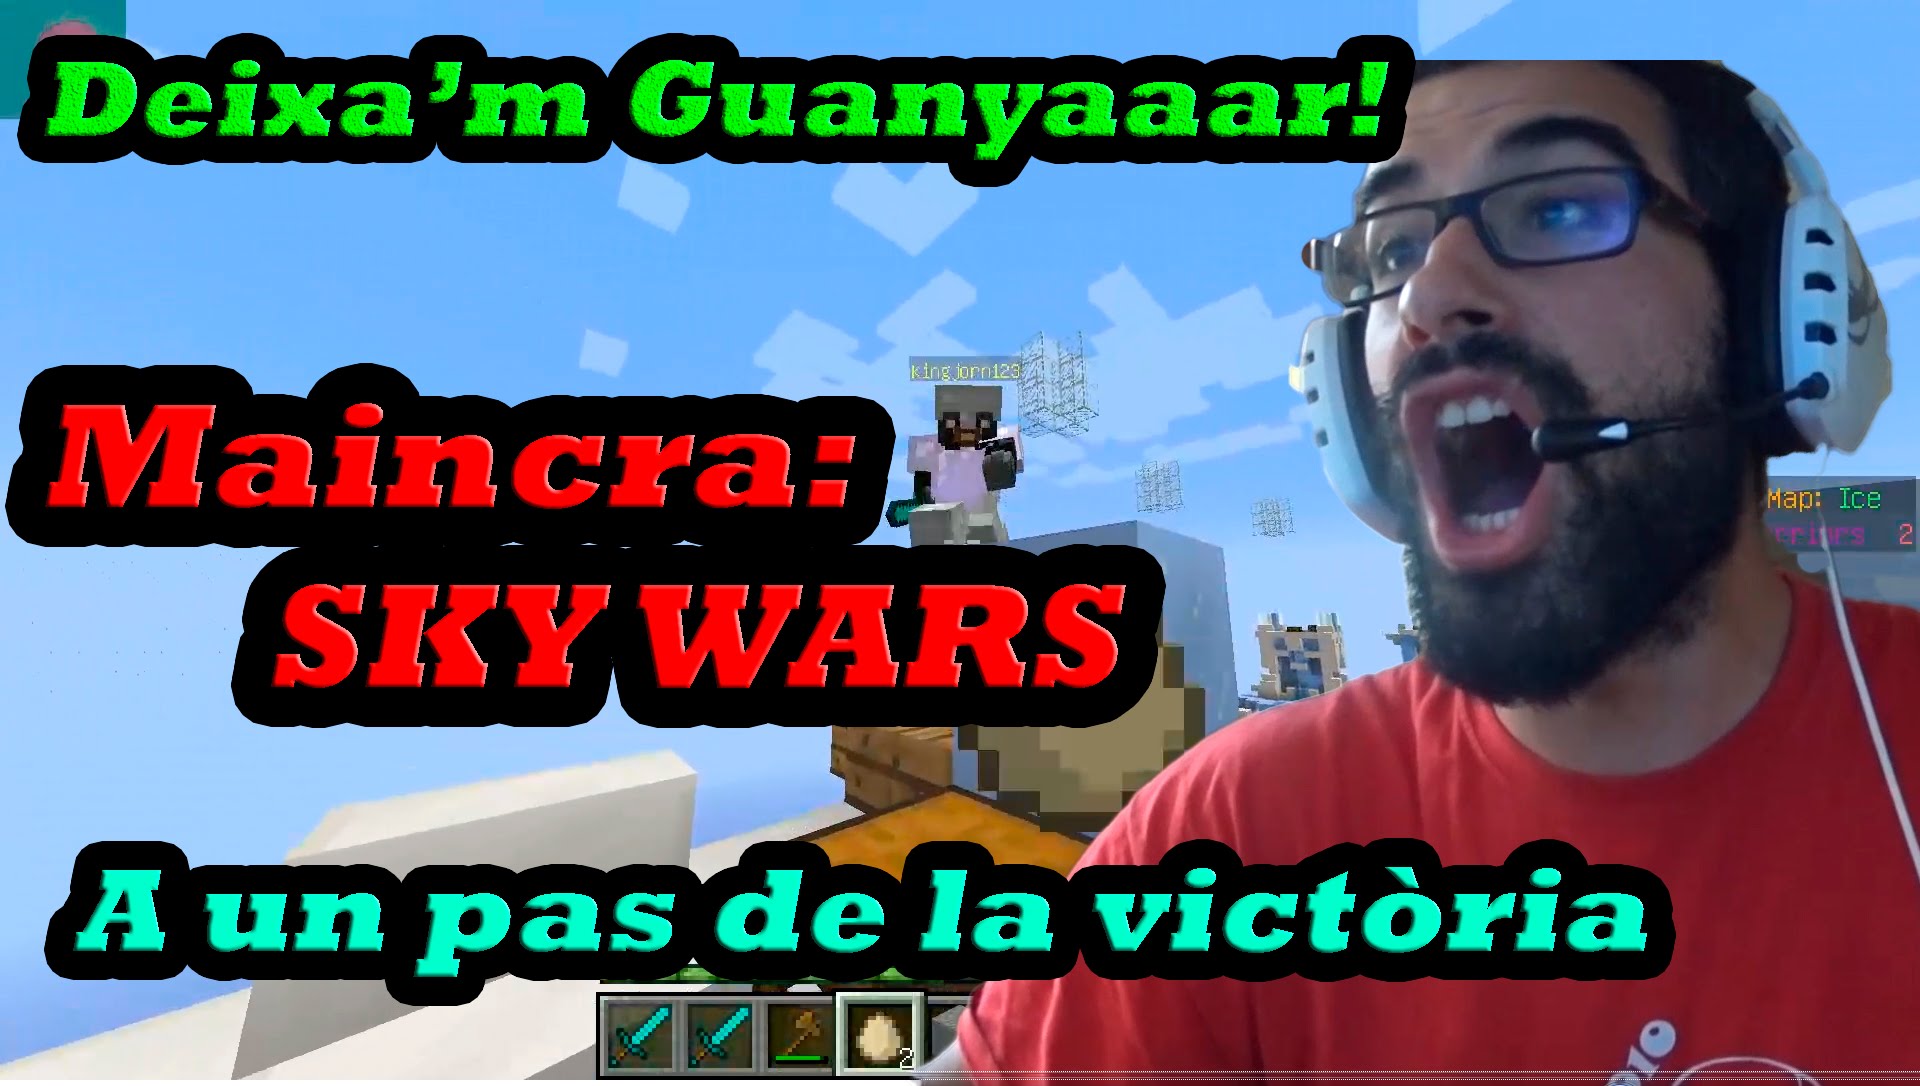 Només quedem doooos!!!-Sky wars Minecraft en català. de BarretinasPlays